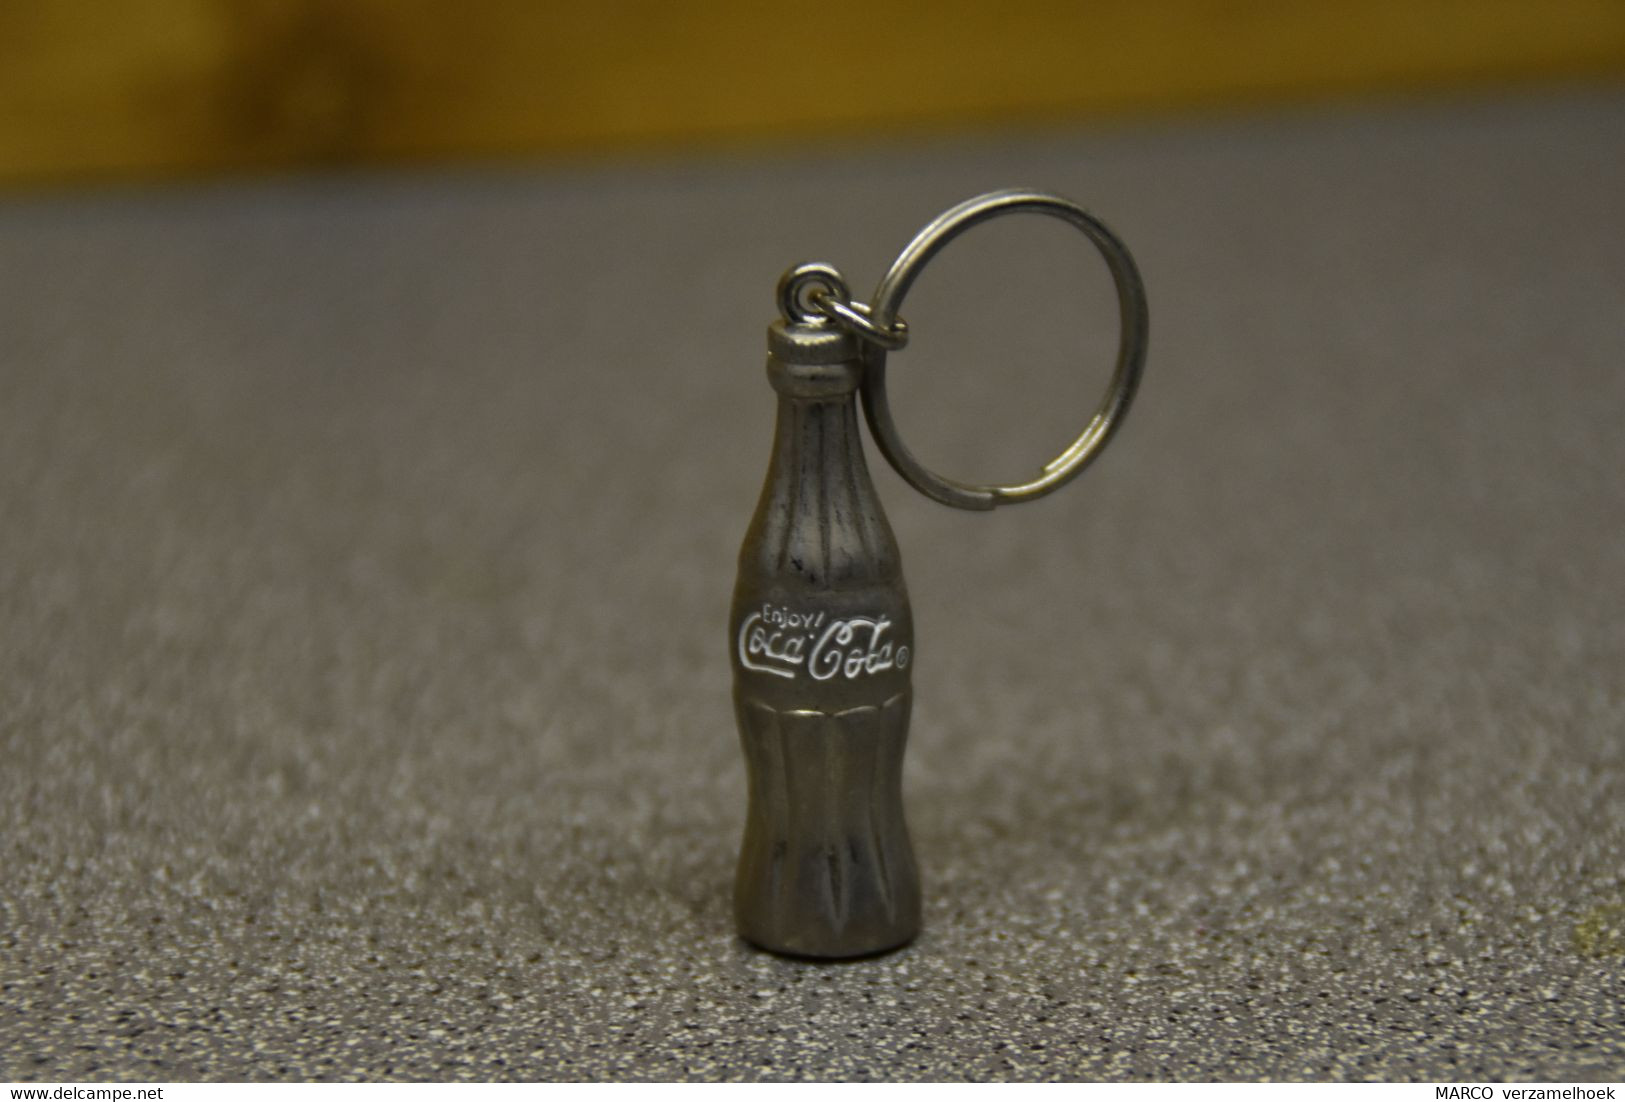 Coca-cola Company Porte Clé-sleutelhanger-key Chain - Key Chains